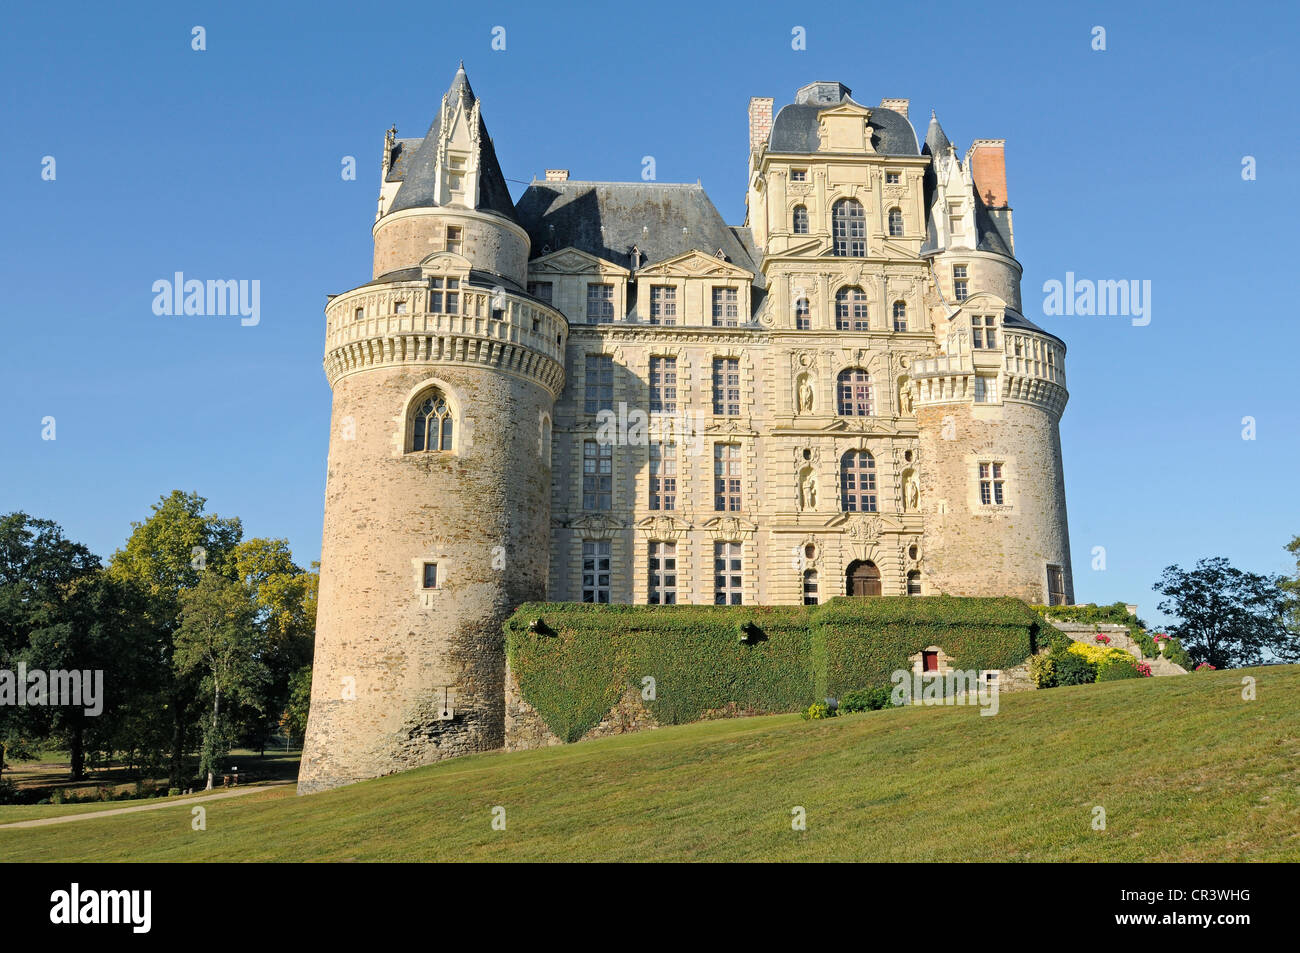 Chateau Brissac Castle, Brissac-Quince, Angers, department of Maine-et-Loire, Pays de la Loire, France, Europe Stock Photo